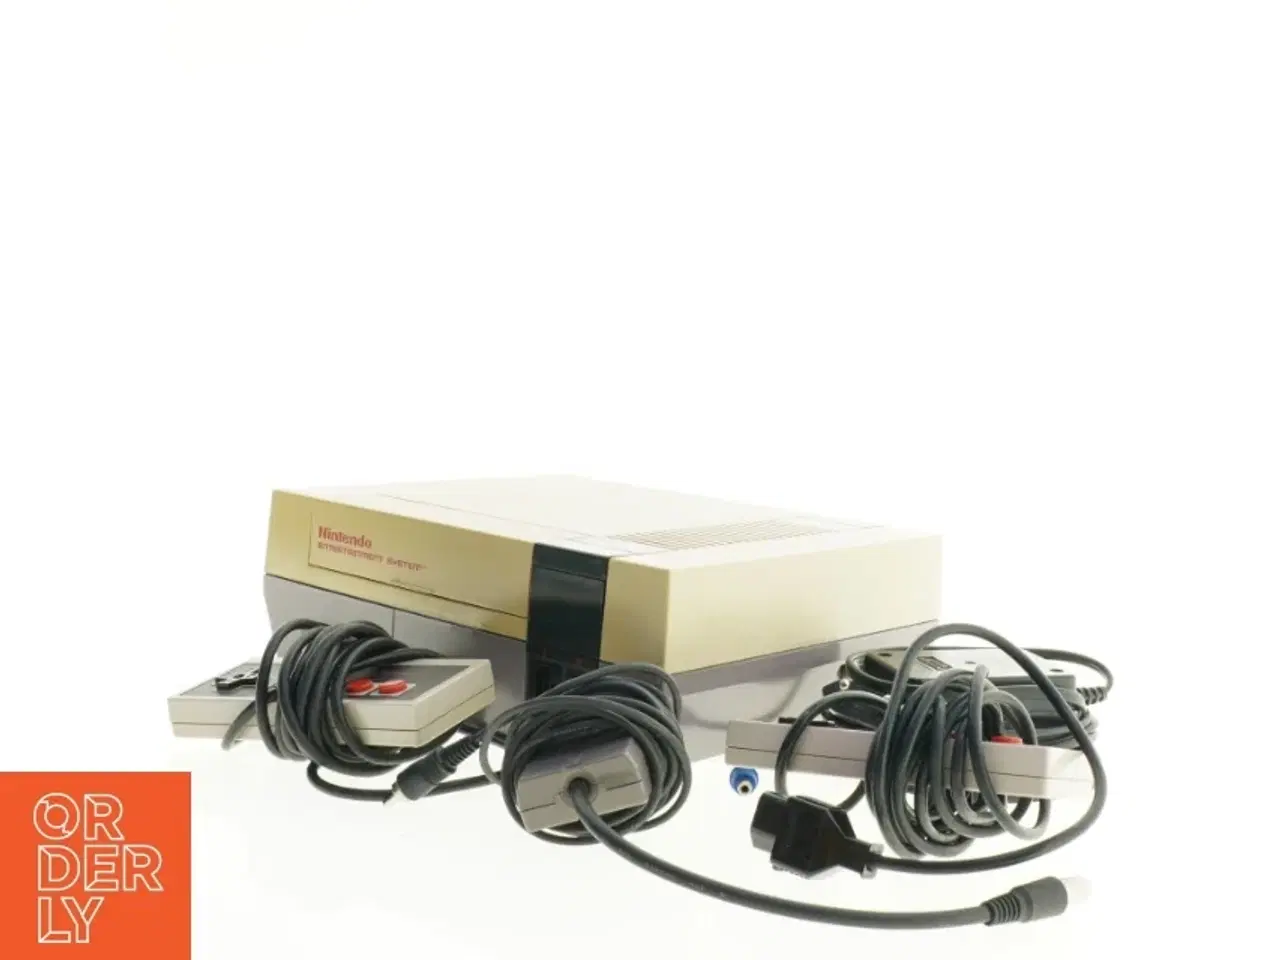 Billede 3 - Nintendo Entertainment System med tilbehør fra Nintendo (str. 26 x 20 x 9 cm)